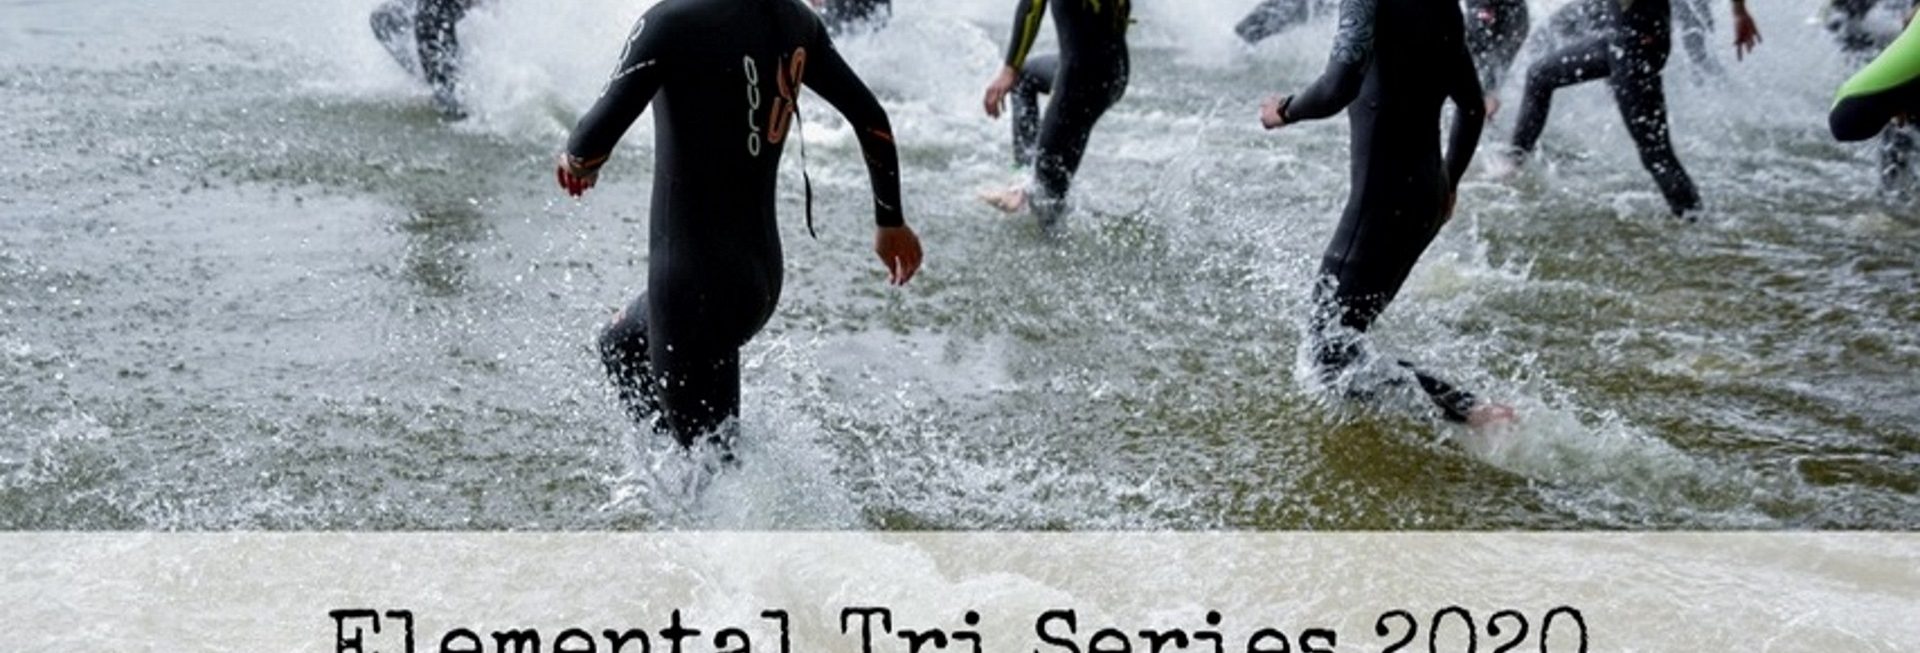 Plakat zdjęcie zapraszające na zawody Triathlon Elemental Tri Series Olsztyn 2020. Na zdjęciu zawodnicy wchodzący do jeziora i startujący do zawodów w dyscyplinie pływanie.   